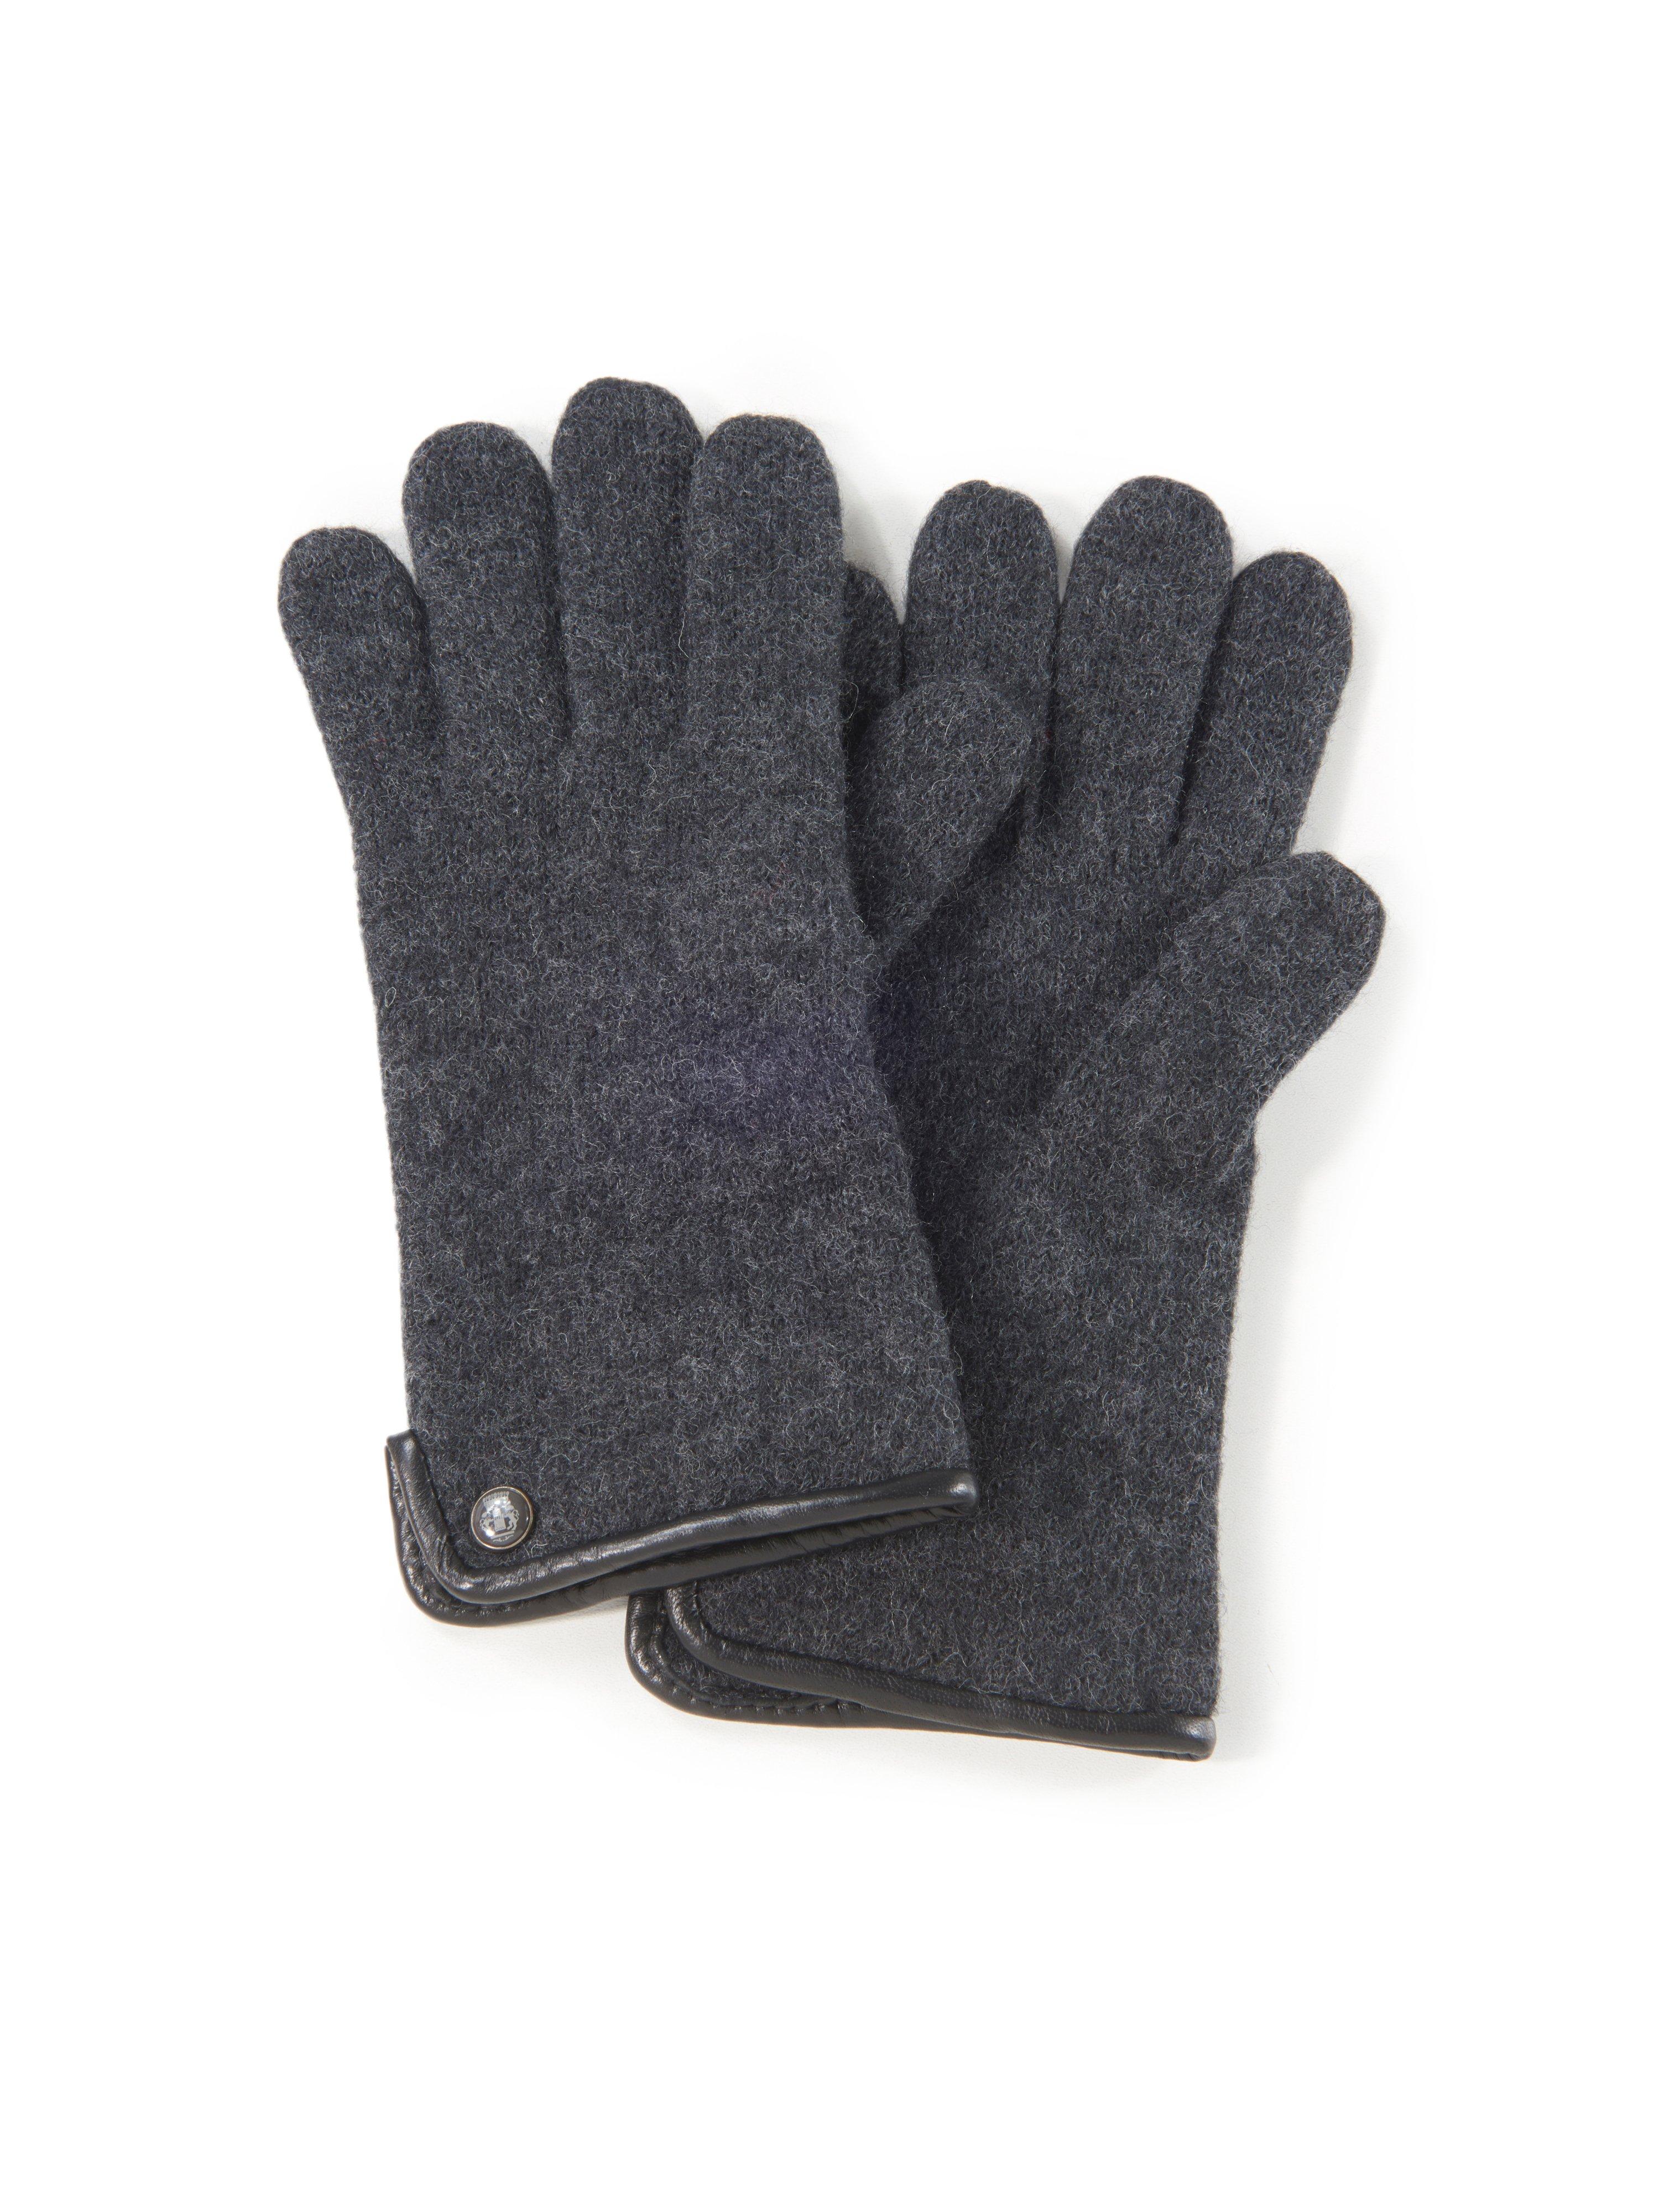 Handschoenen 100% scheerwol Van Roeckl grijs